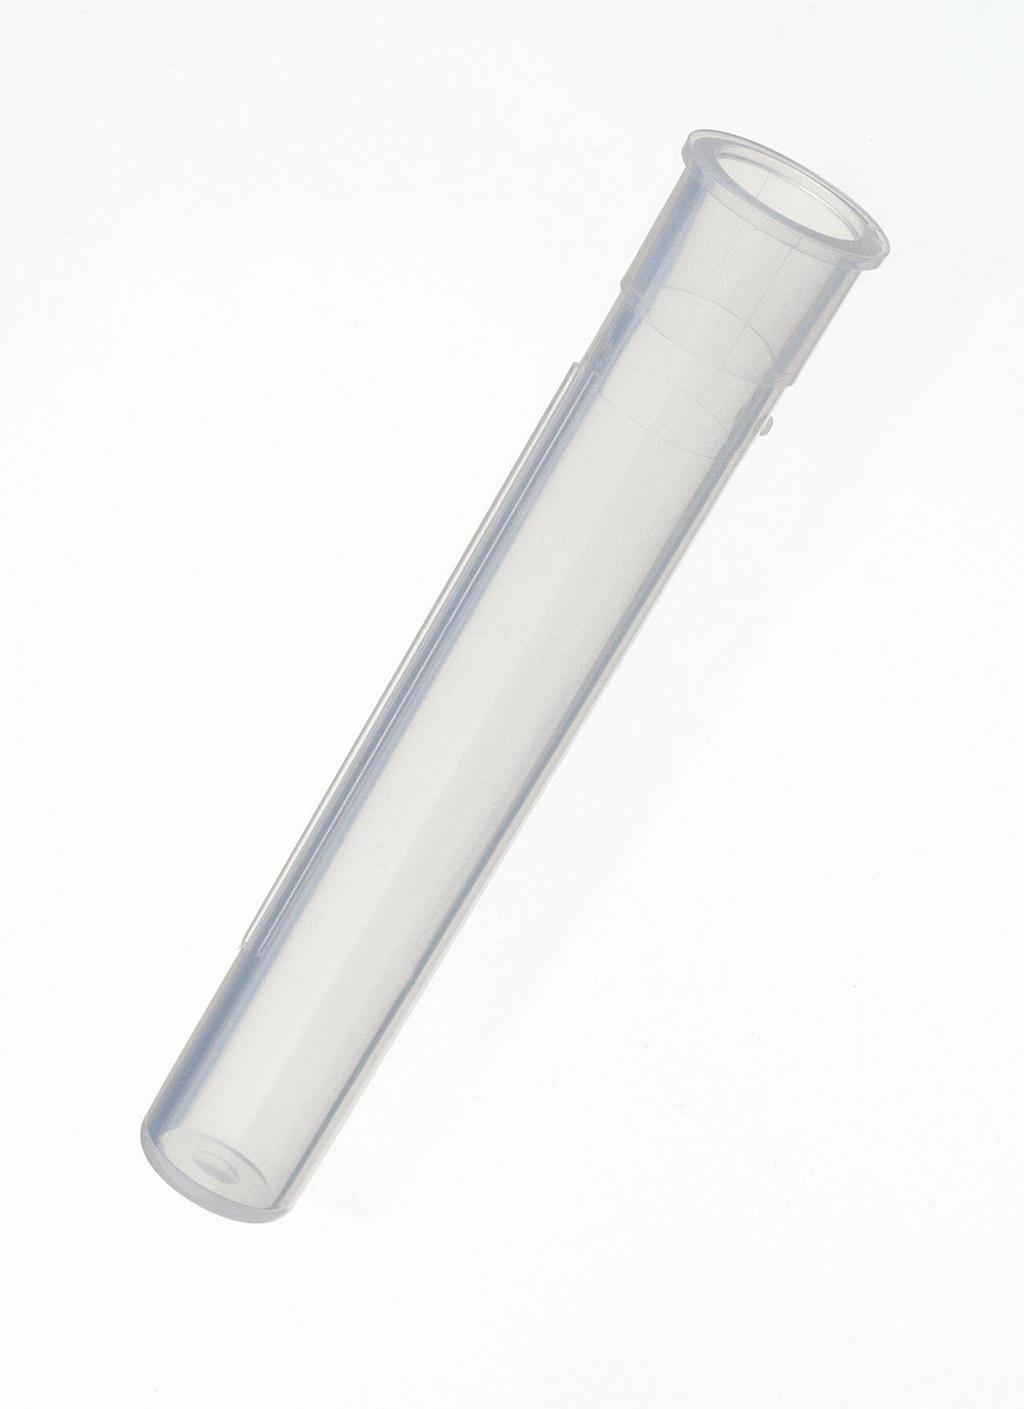 Material: PTFE Aussendurchmesser (mm): 5 Länge (mm): 25 1 6.2008.040 Elektrodenköcher Ergibt zusammen mit Köcherhalter 6.2008.050 eine Halterung für die Elektrode an Dosiereinheiten 6.